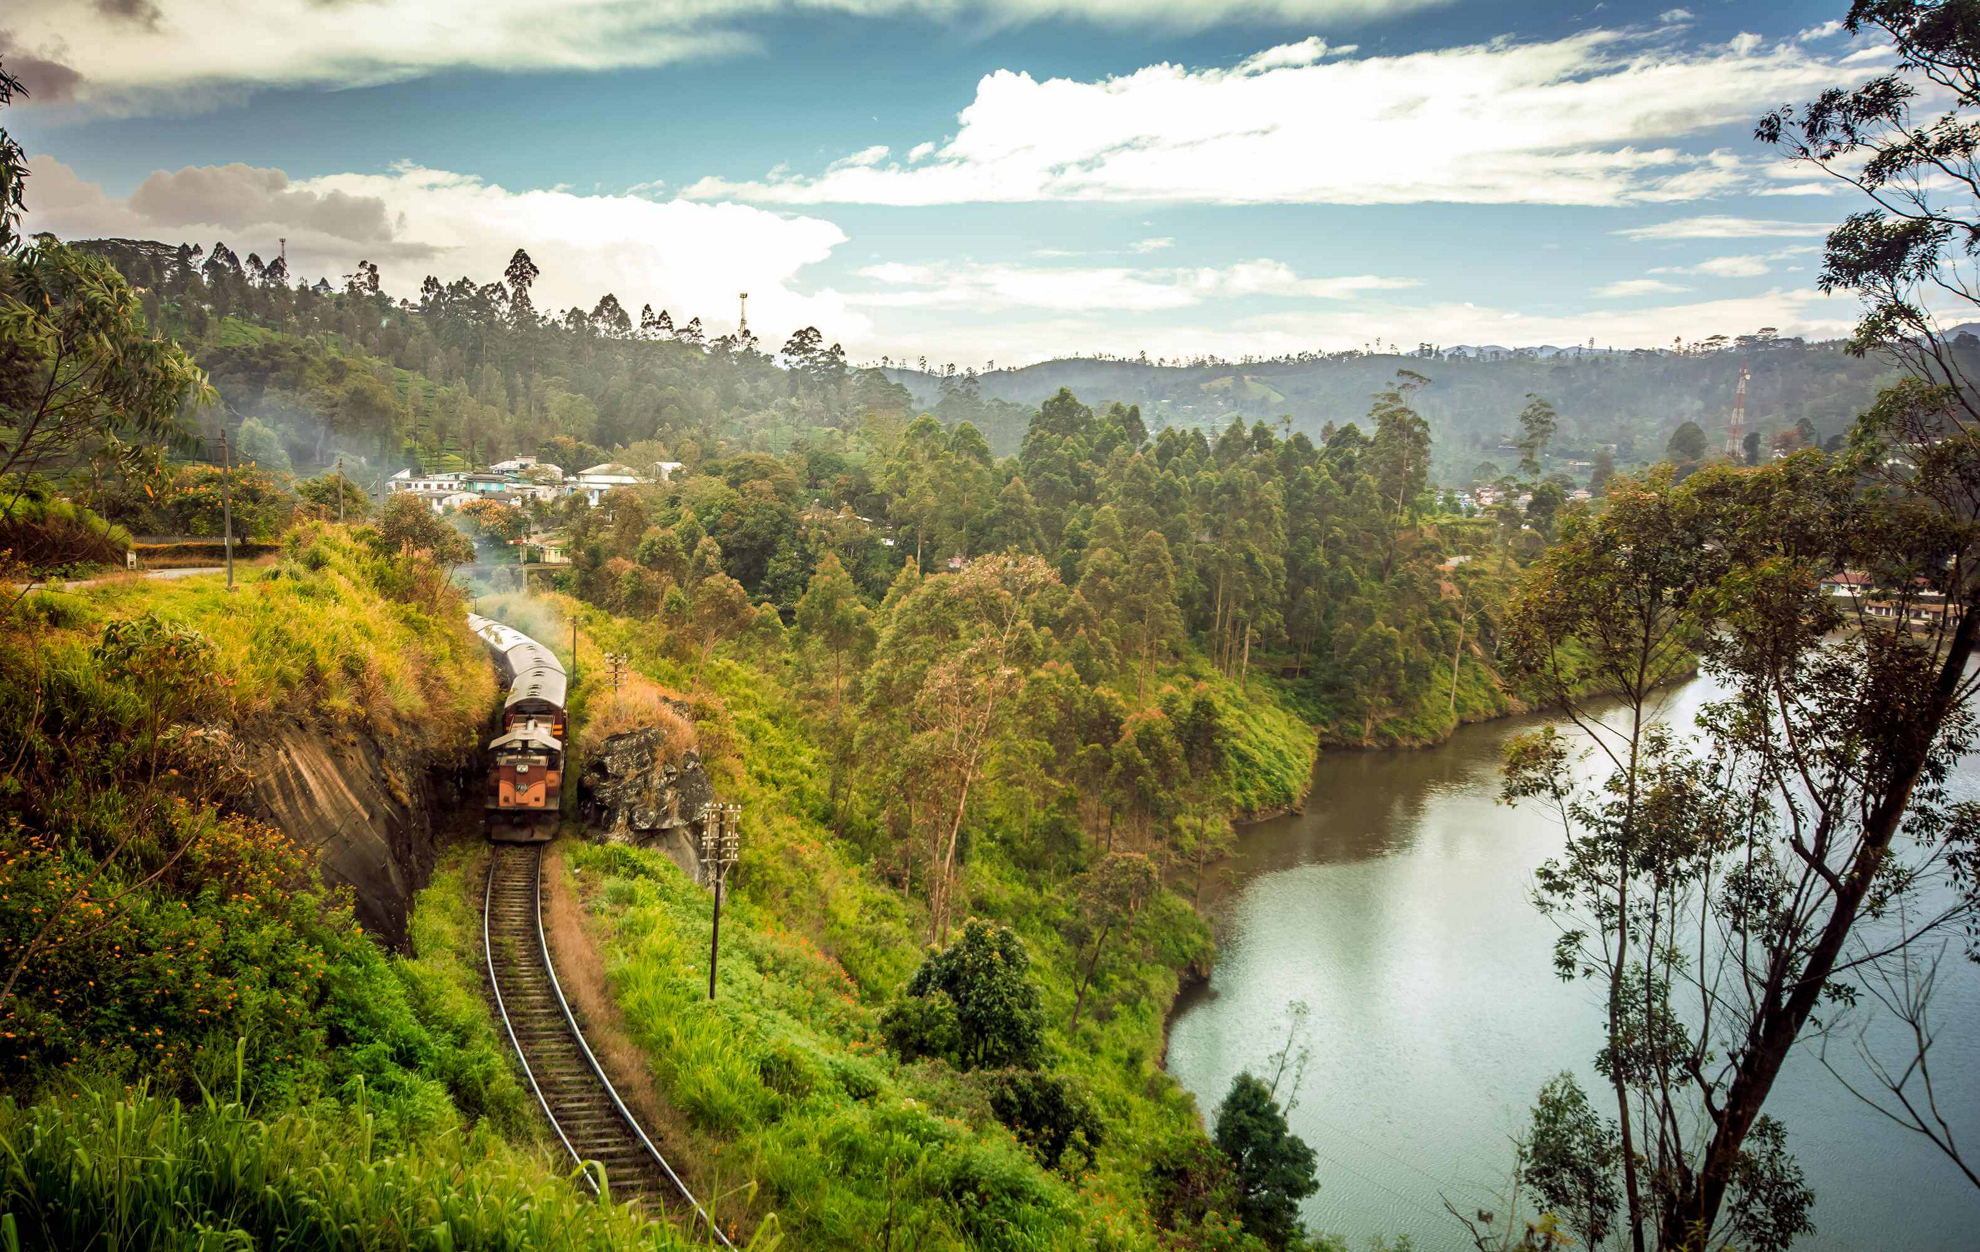 Sri Lanka mit dem Zug: Fahrt entlang eines Dorfes und eines Sees inmitten von üppiger Vegetation.